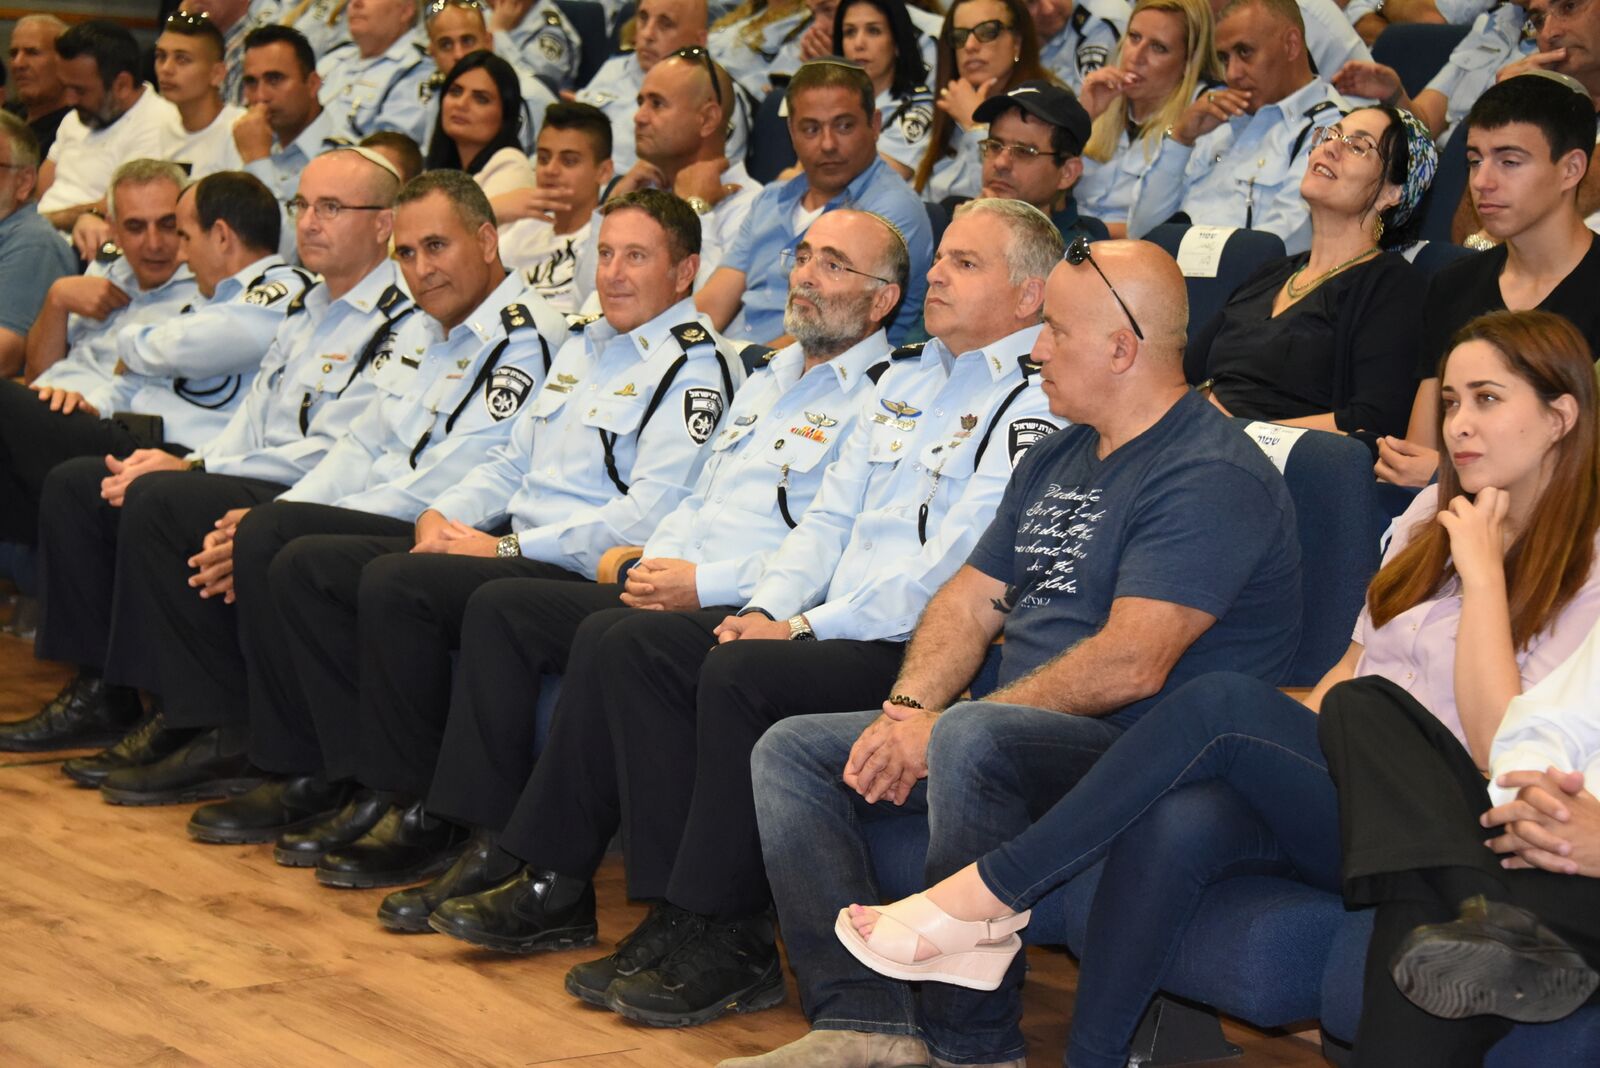 فيديو: تعيين قائد جديد للشرطة في يافا بحضور شخصيات ورجال أعمال 